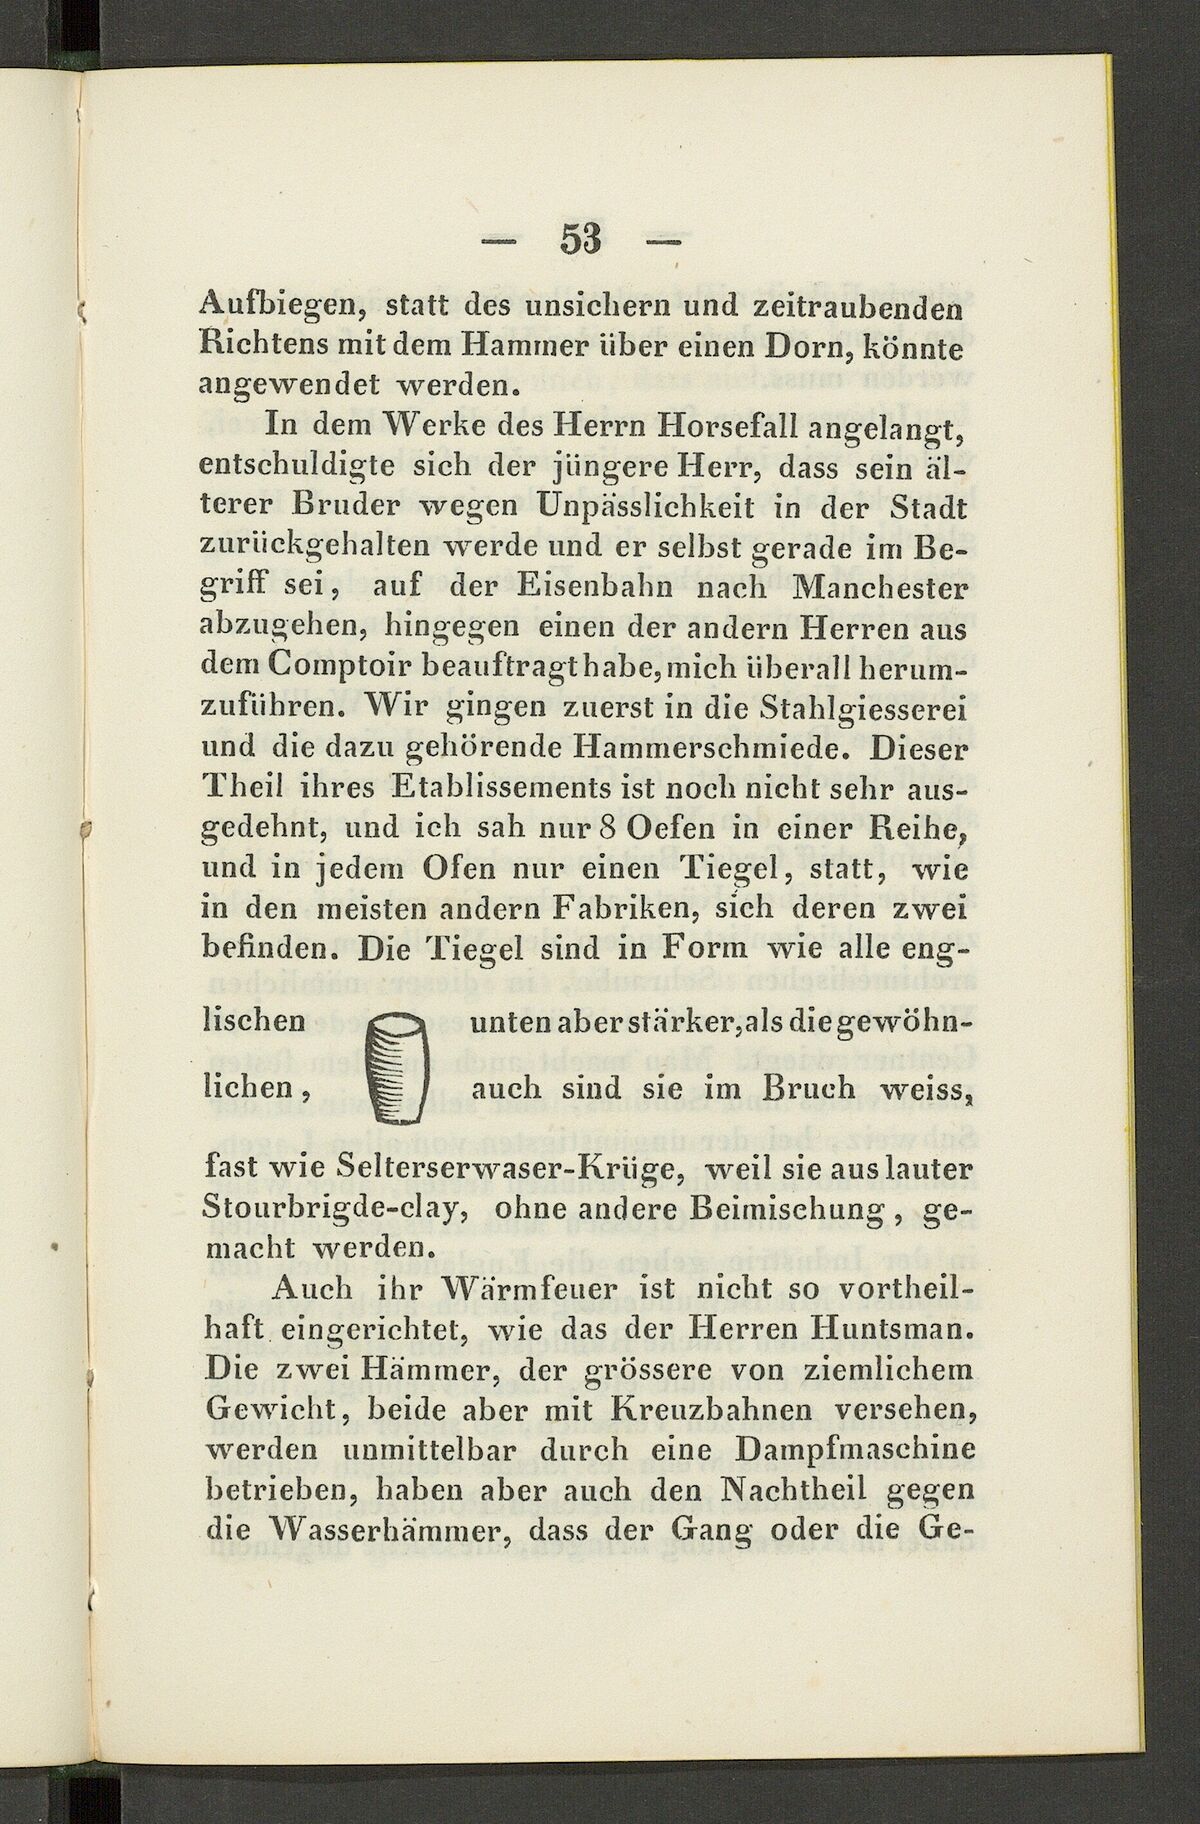 GFD 3/229: Skizze eines englischen Tiegels (Fischers Reisetagebuch 1846, Seite 53)